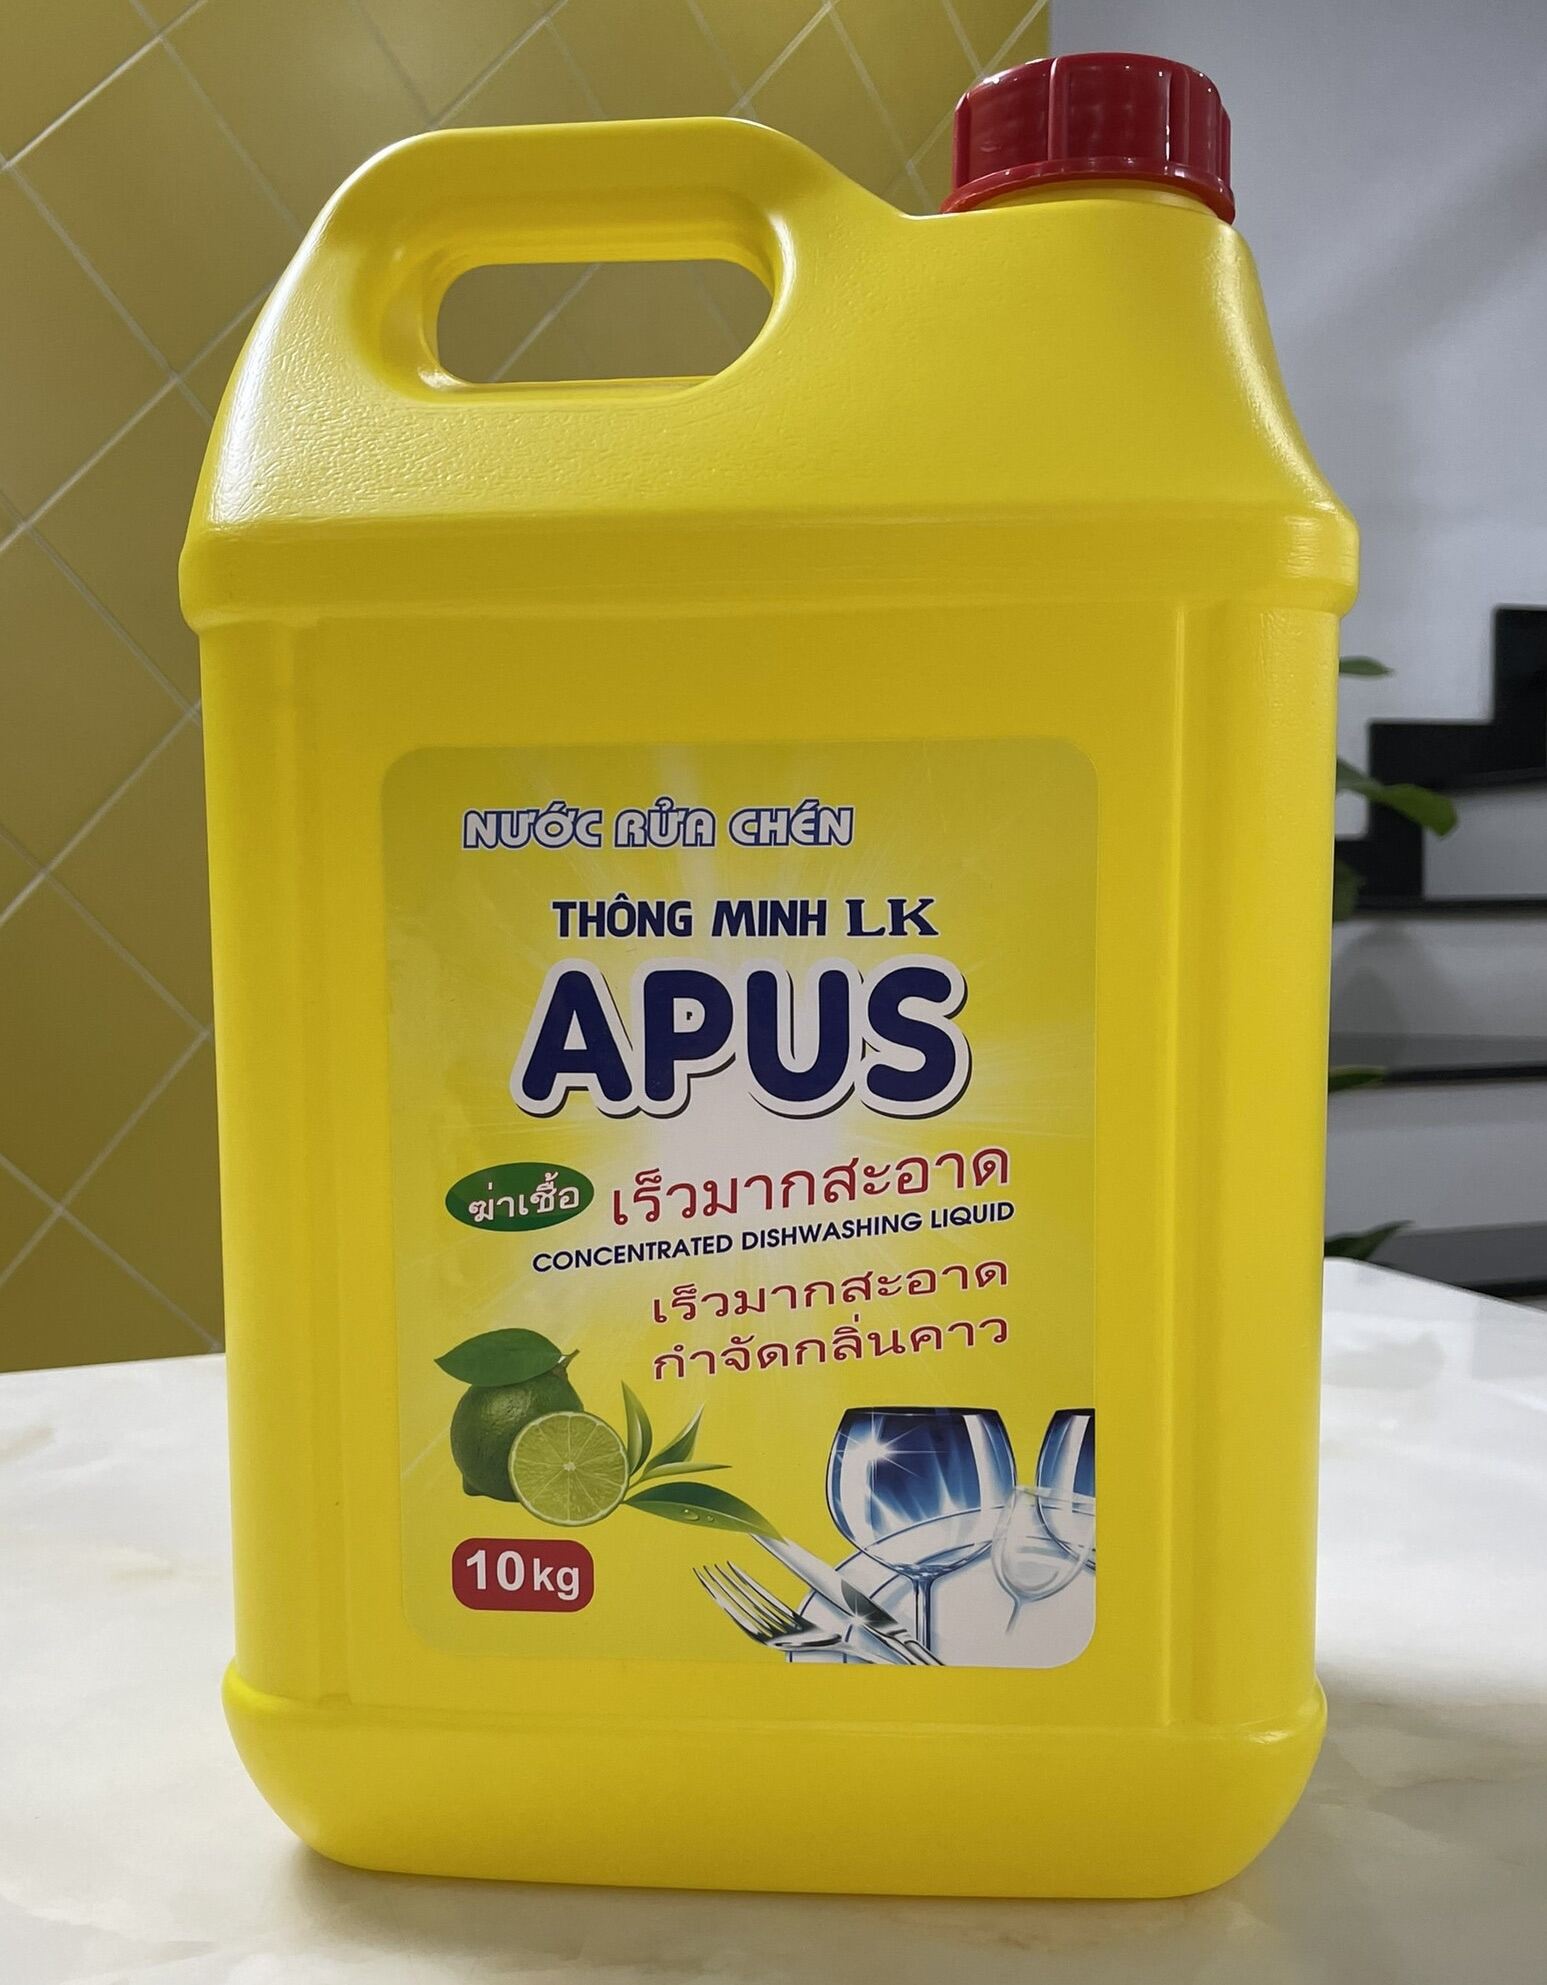 Nước rửa chén cao cấp APUS -10kg